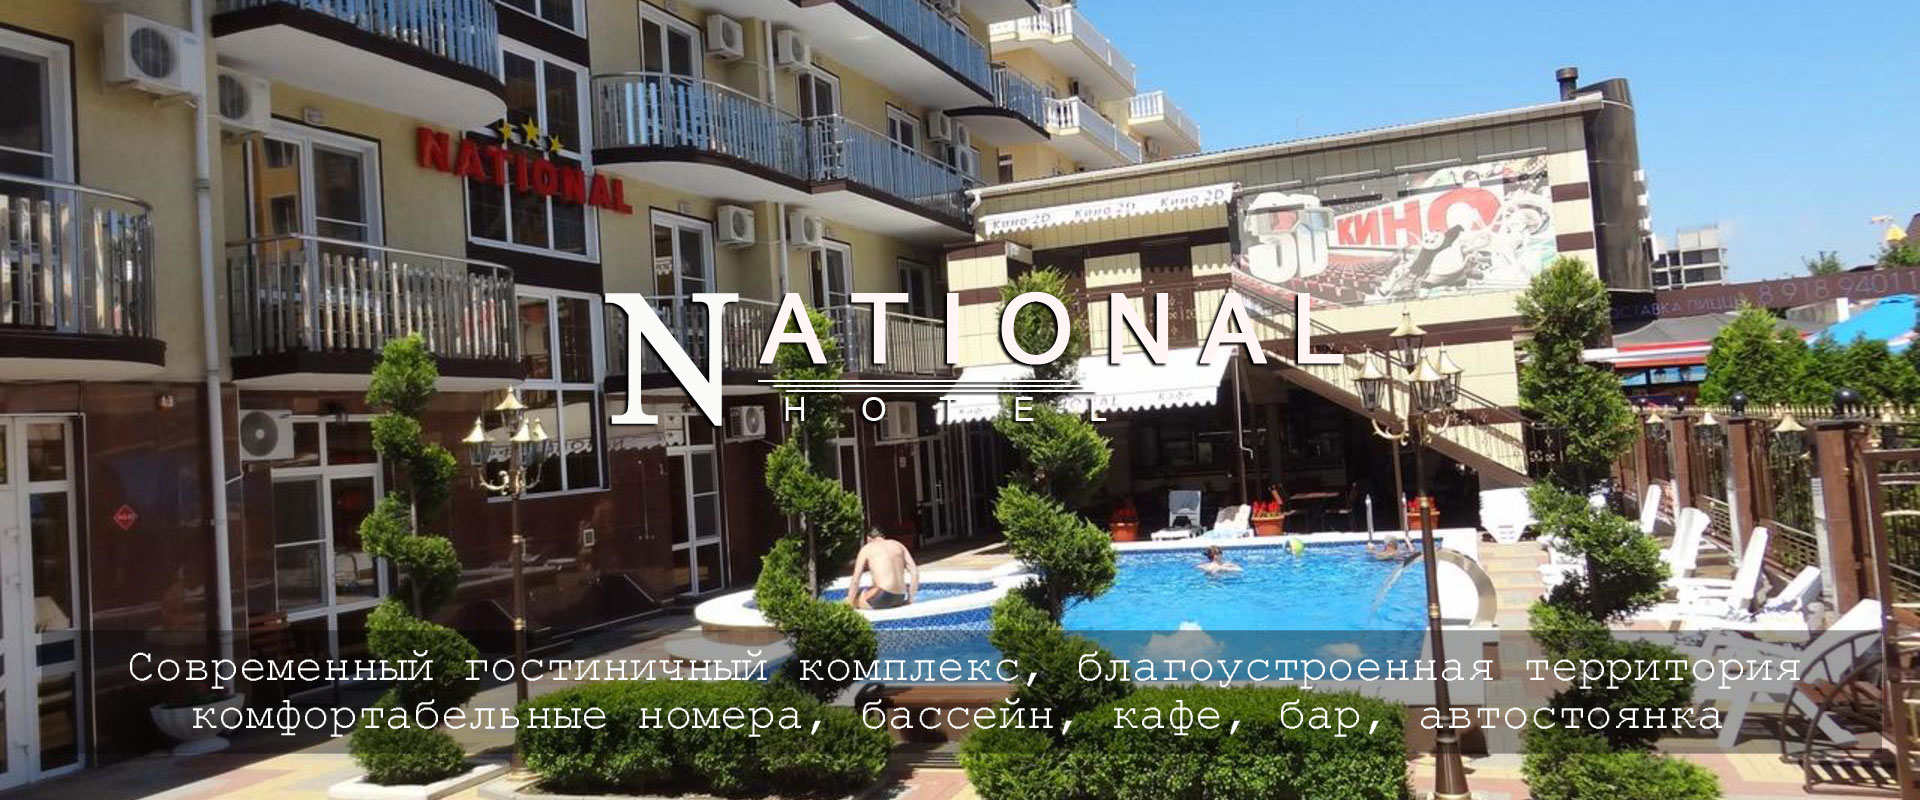 Отель National, комфортабельный отдых в центре Витязево, Анапа